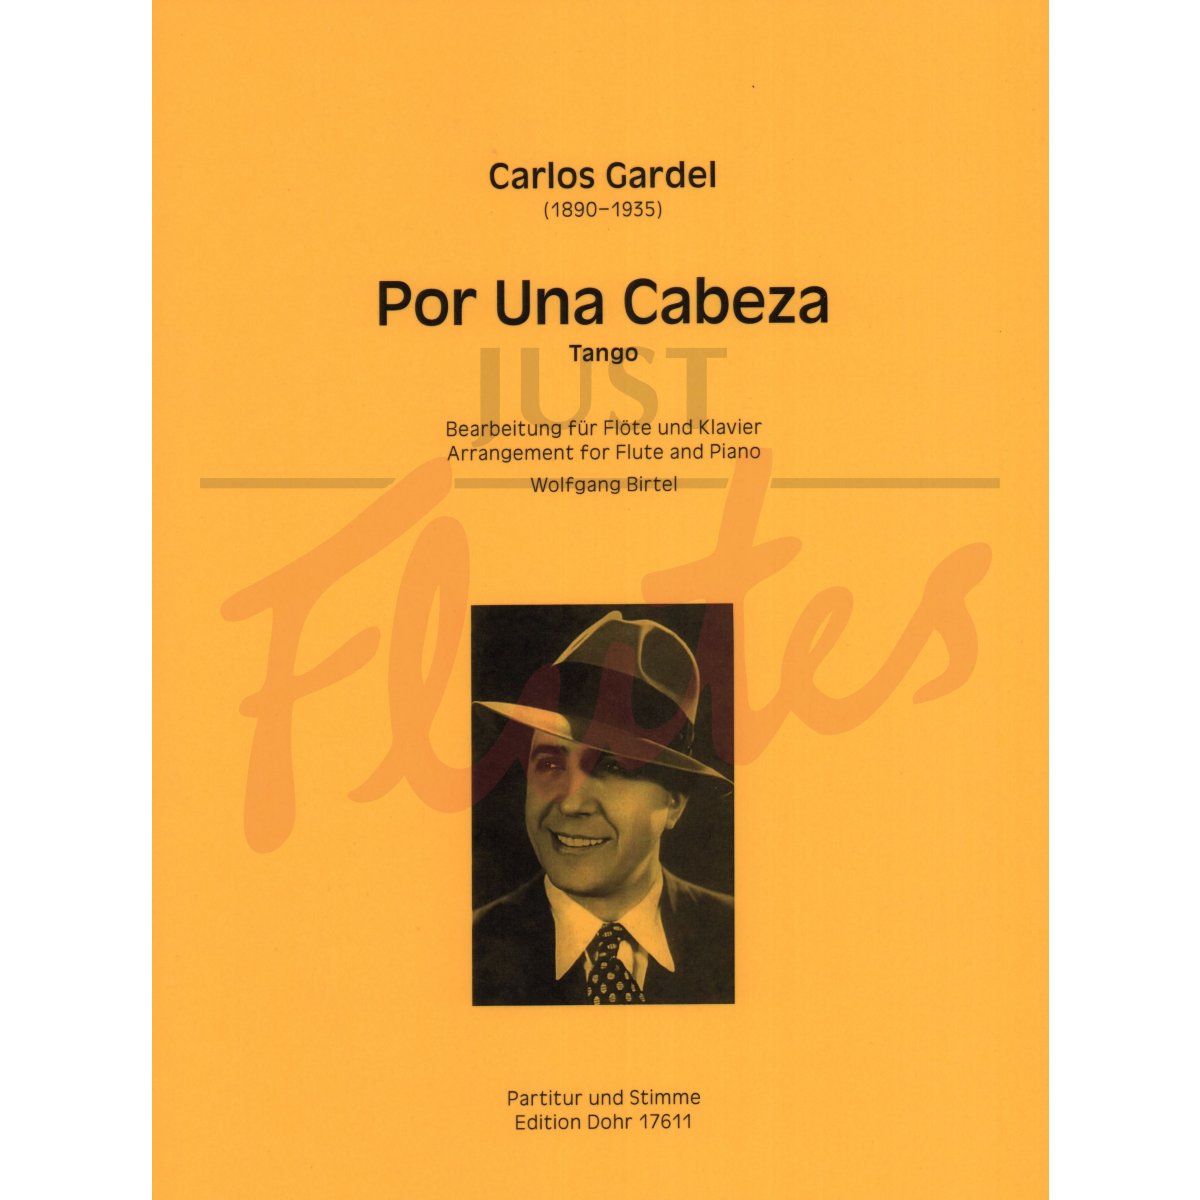 Por Una Cabeza - Tango for Flute and Piano